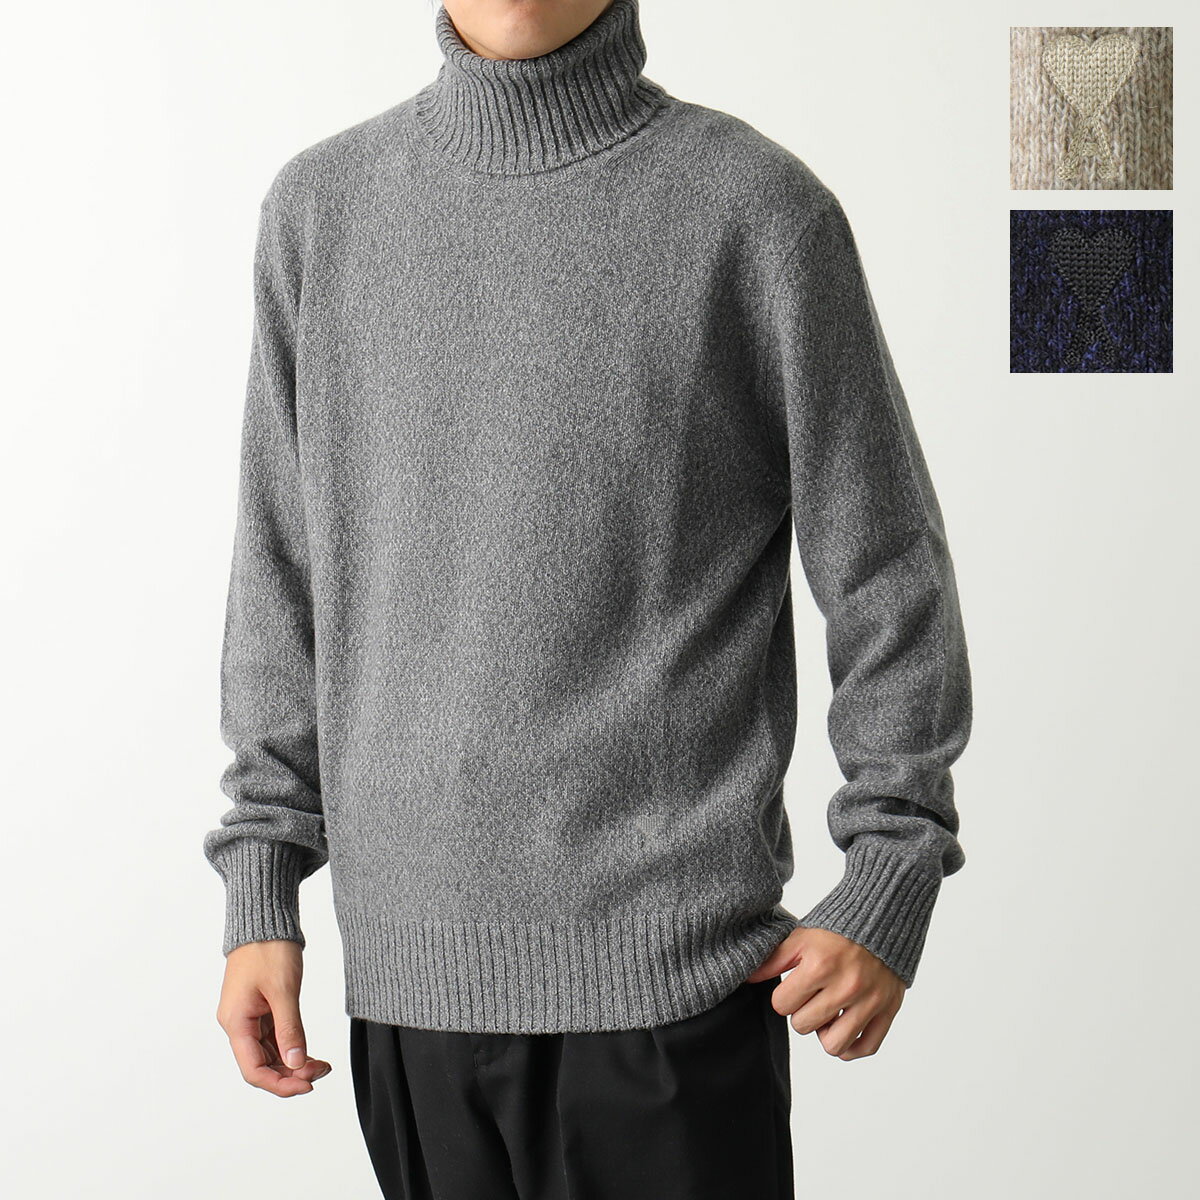 ami paris アミパリス ニット ADC sweater HKS427.005 メンズ セーター タートルネック カシミヤ×ウール 長袖 ハートロゴ 刺繍 カラー3色